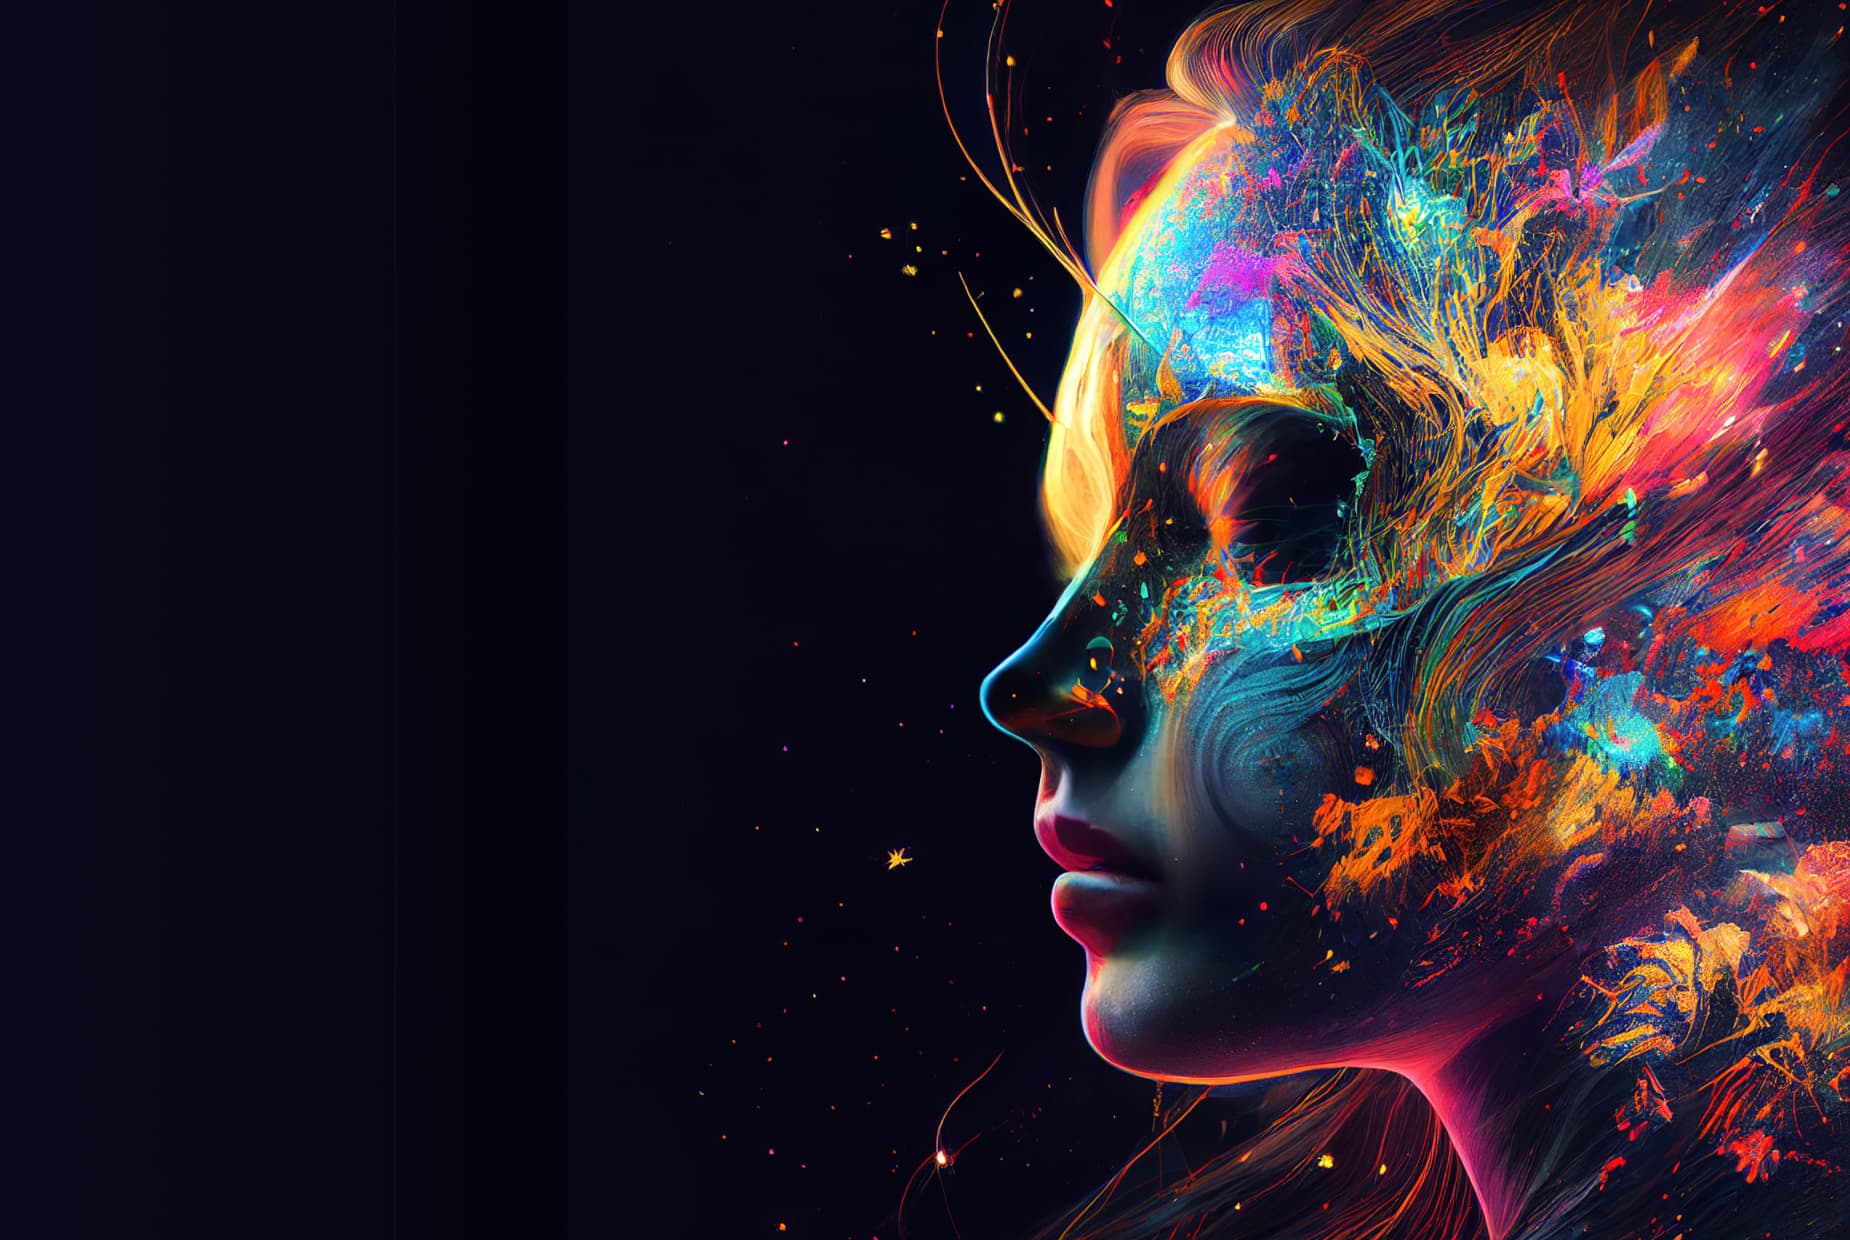 AI 生成的女性頭部影像，其中包含五顏六色的抽象藝術。